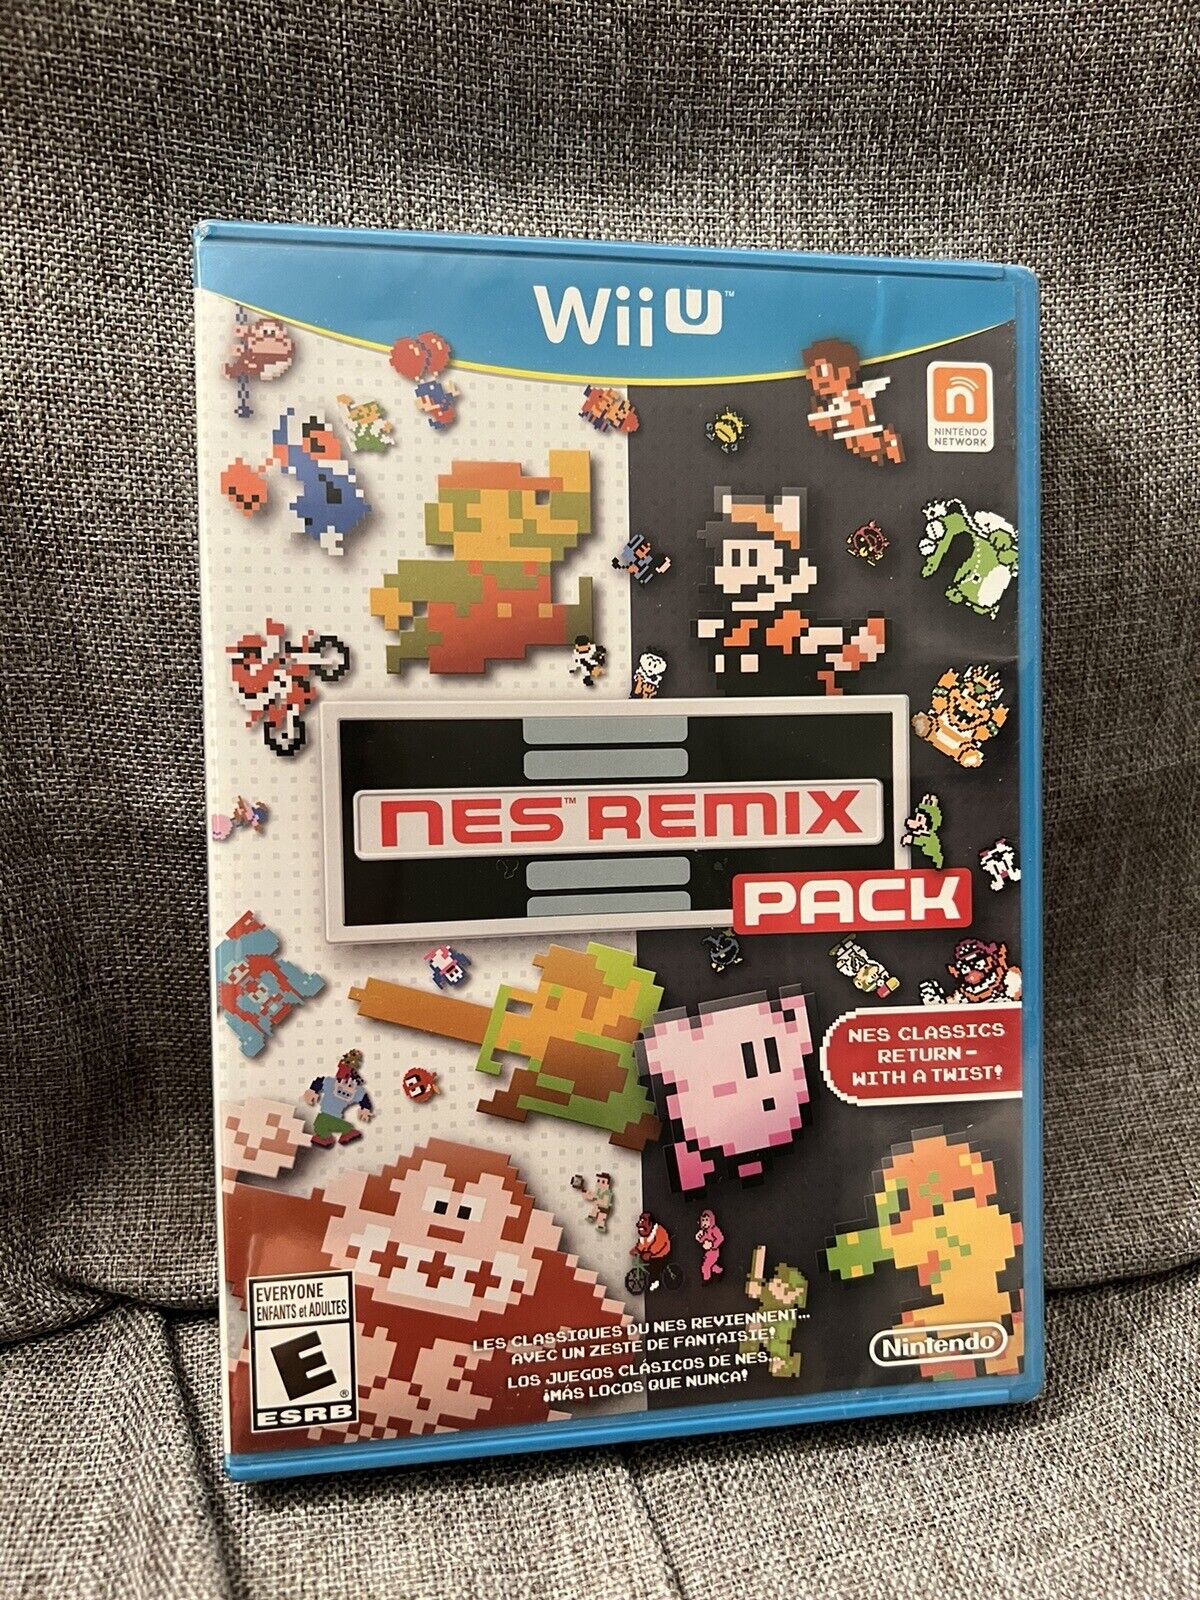 NES Remix Pack (Nintendo Wii U, 2014) BRAND NEW SEALED Free Shipping DAMAGED